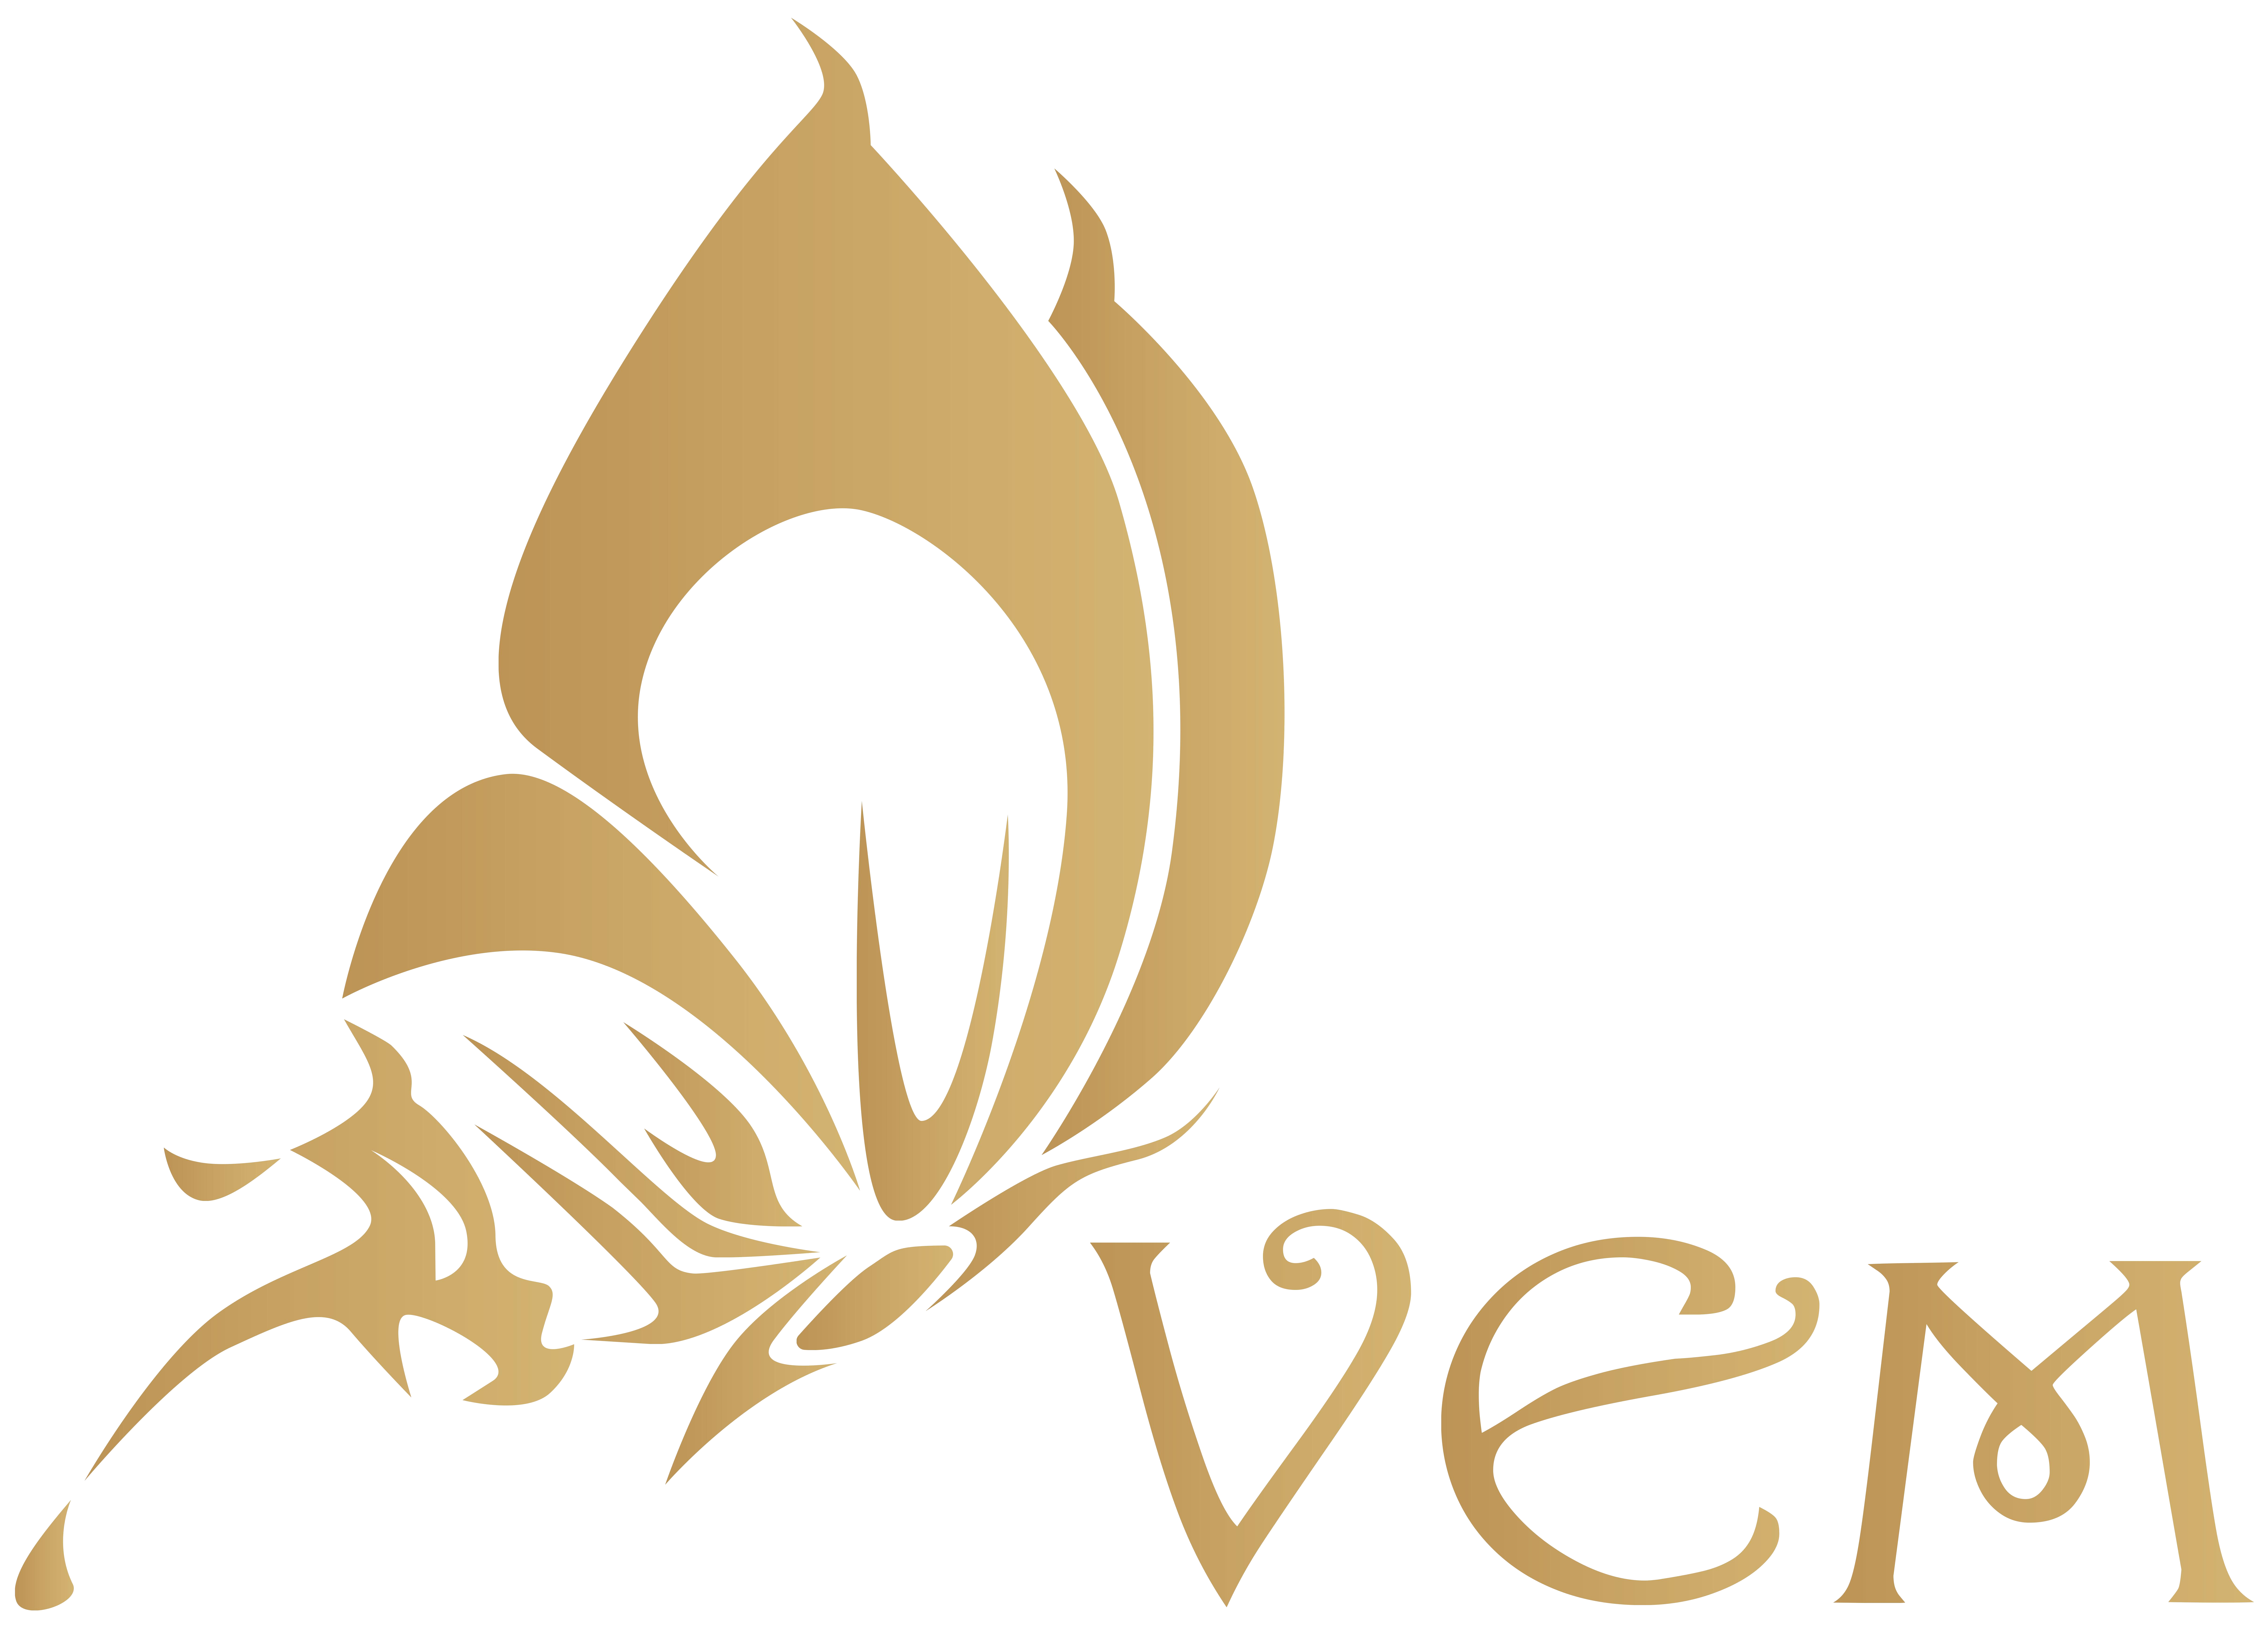 TheEvenet